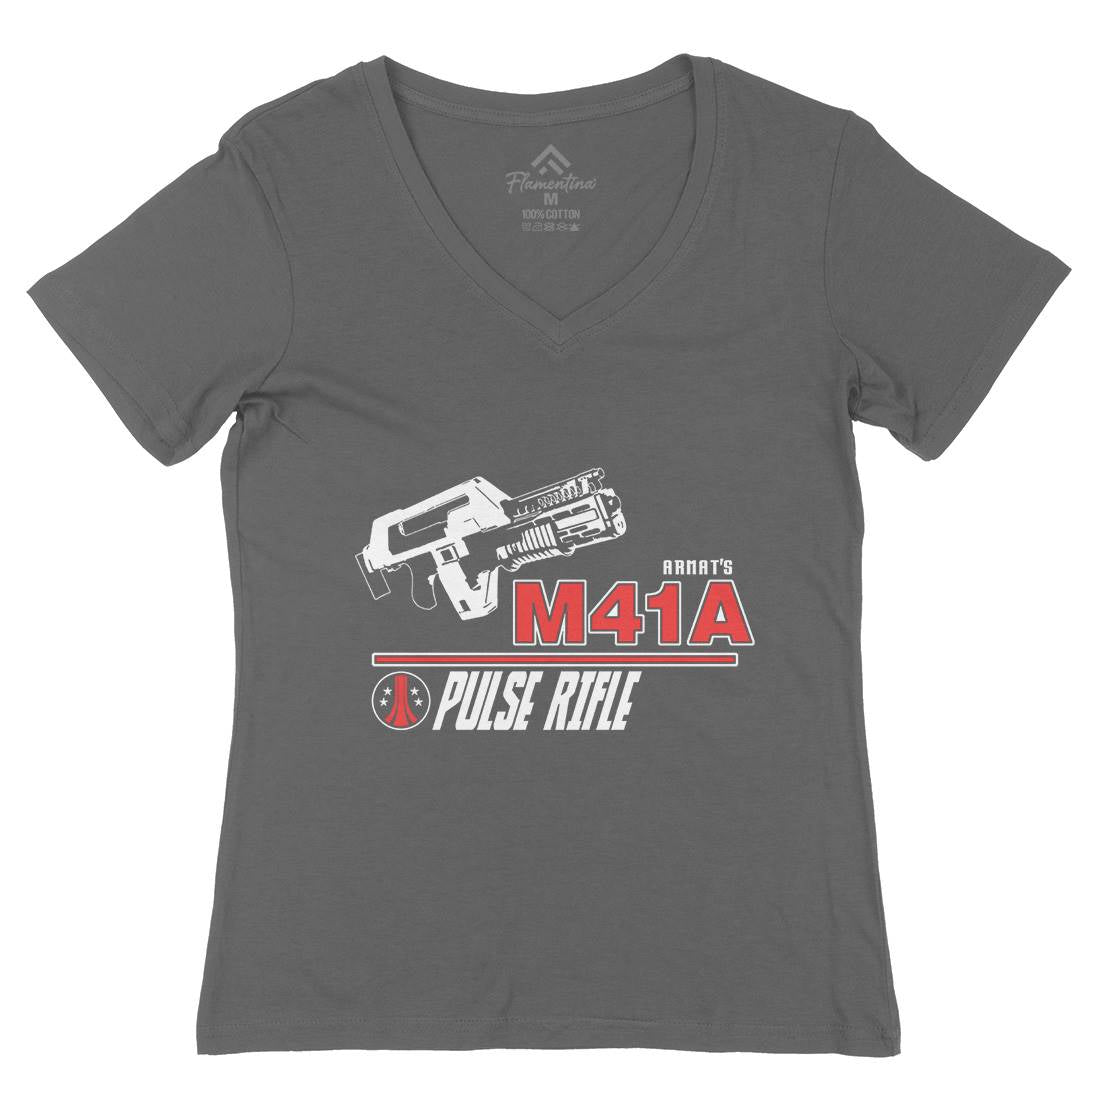 M41A Womens Organic V-Neck T-Shirt Army D153